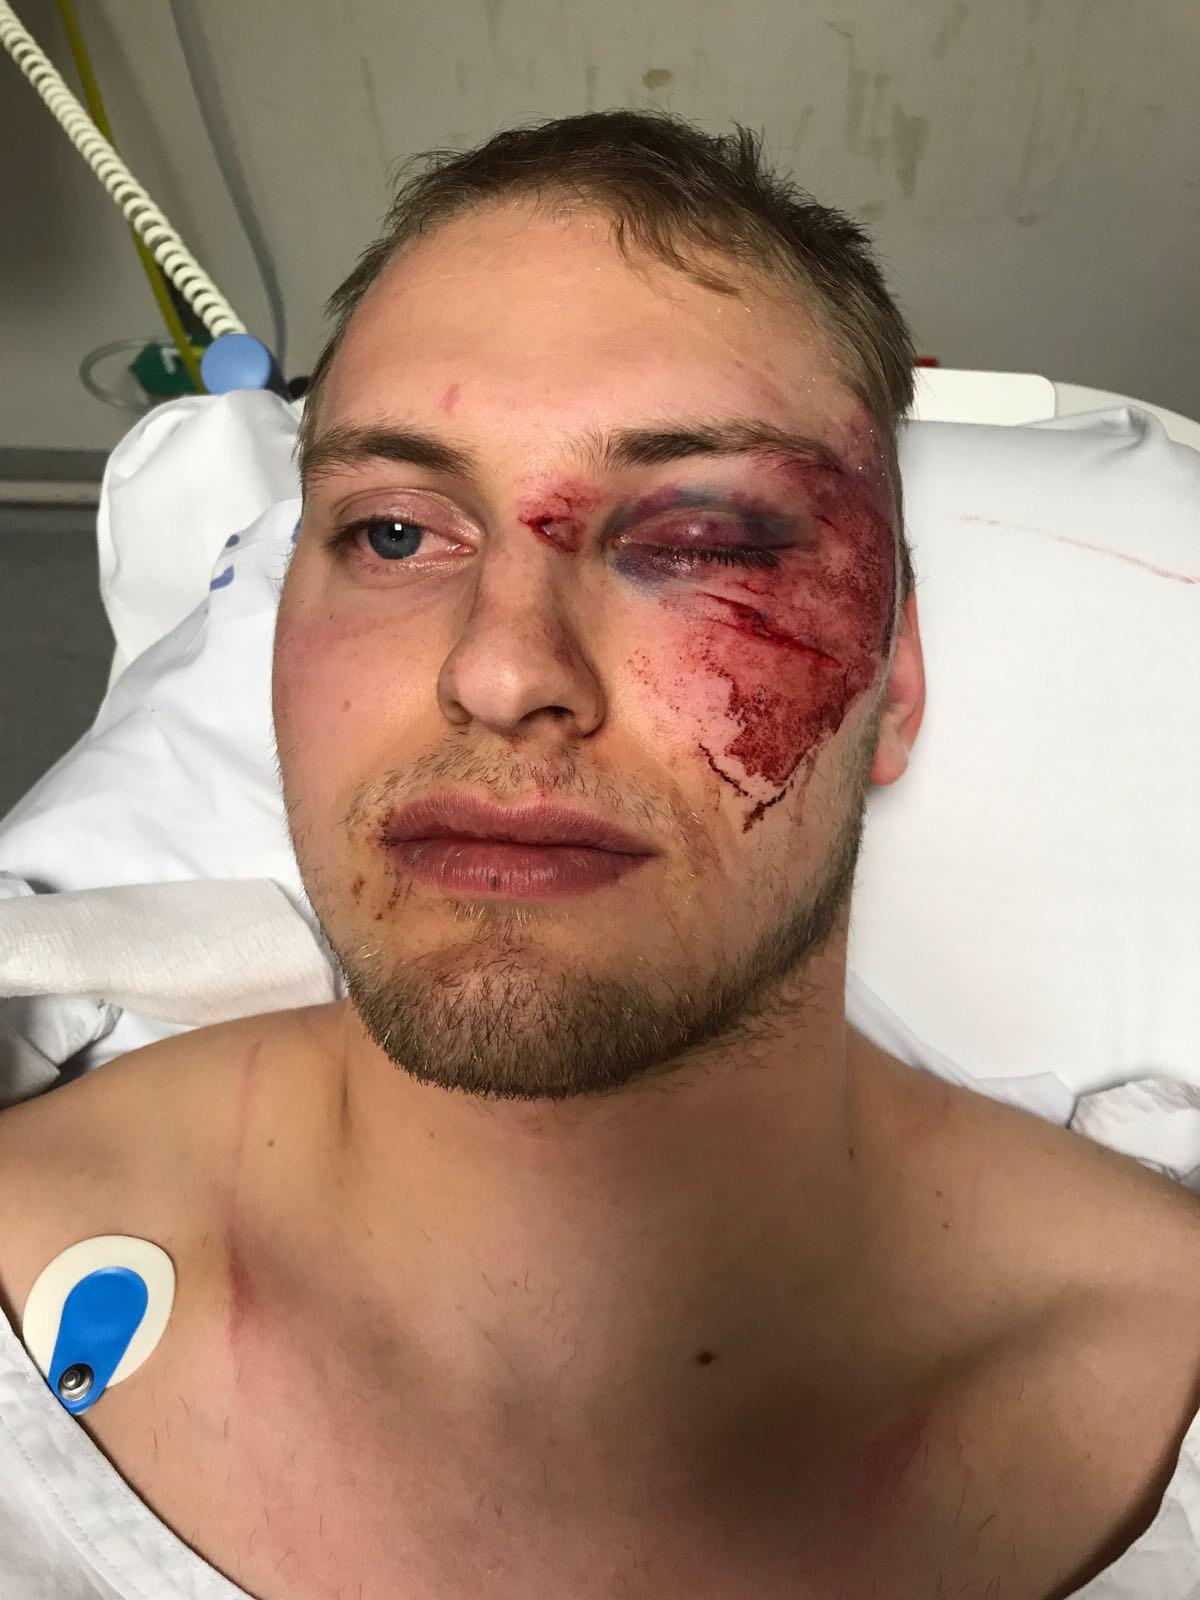 En rejäl blåtira, hjärnskakning och delvis ihopsytt ansikte drabbades Ottosson av efter tacklingen.